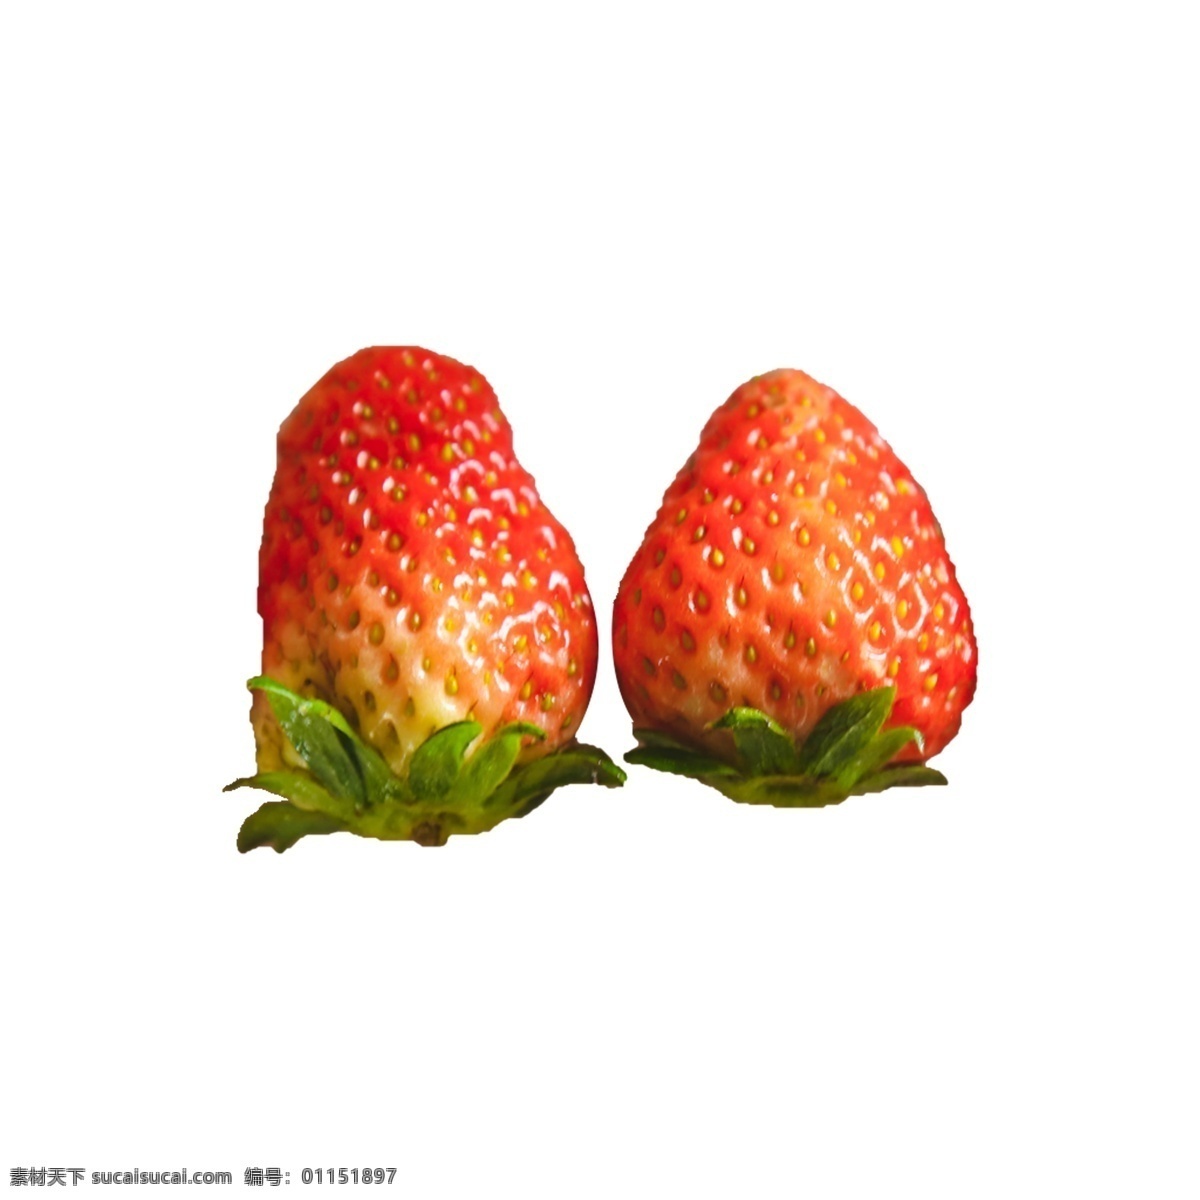 两个 新鲜 草莓 两个草莓 组合 植物 水果 美味 甜食 甘甜 水润 多汁 红色 绿叶 叶子